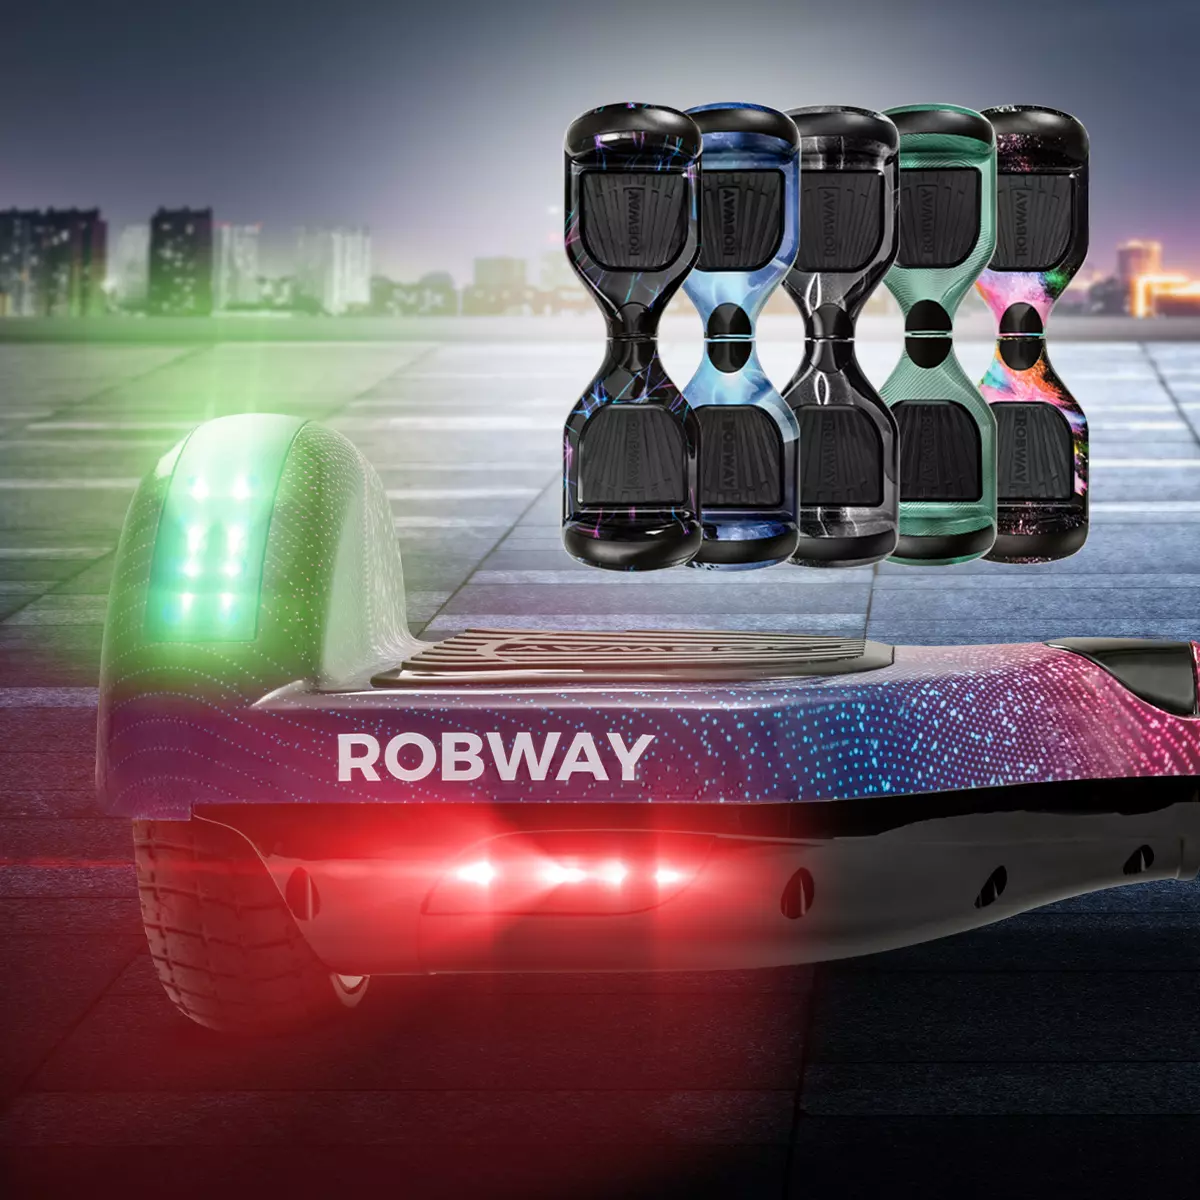 Leuchtendes Robway W1 Hoverboard auf Straße, fünf weitere unterschiedliche Designs des E-Boards